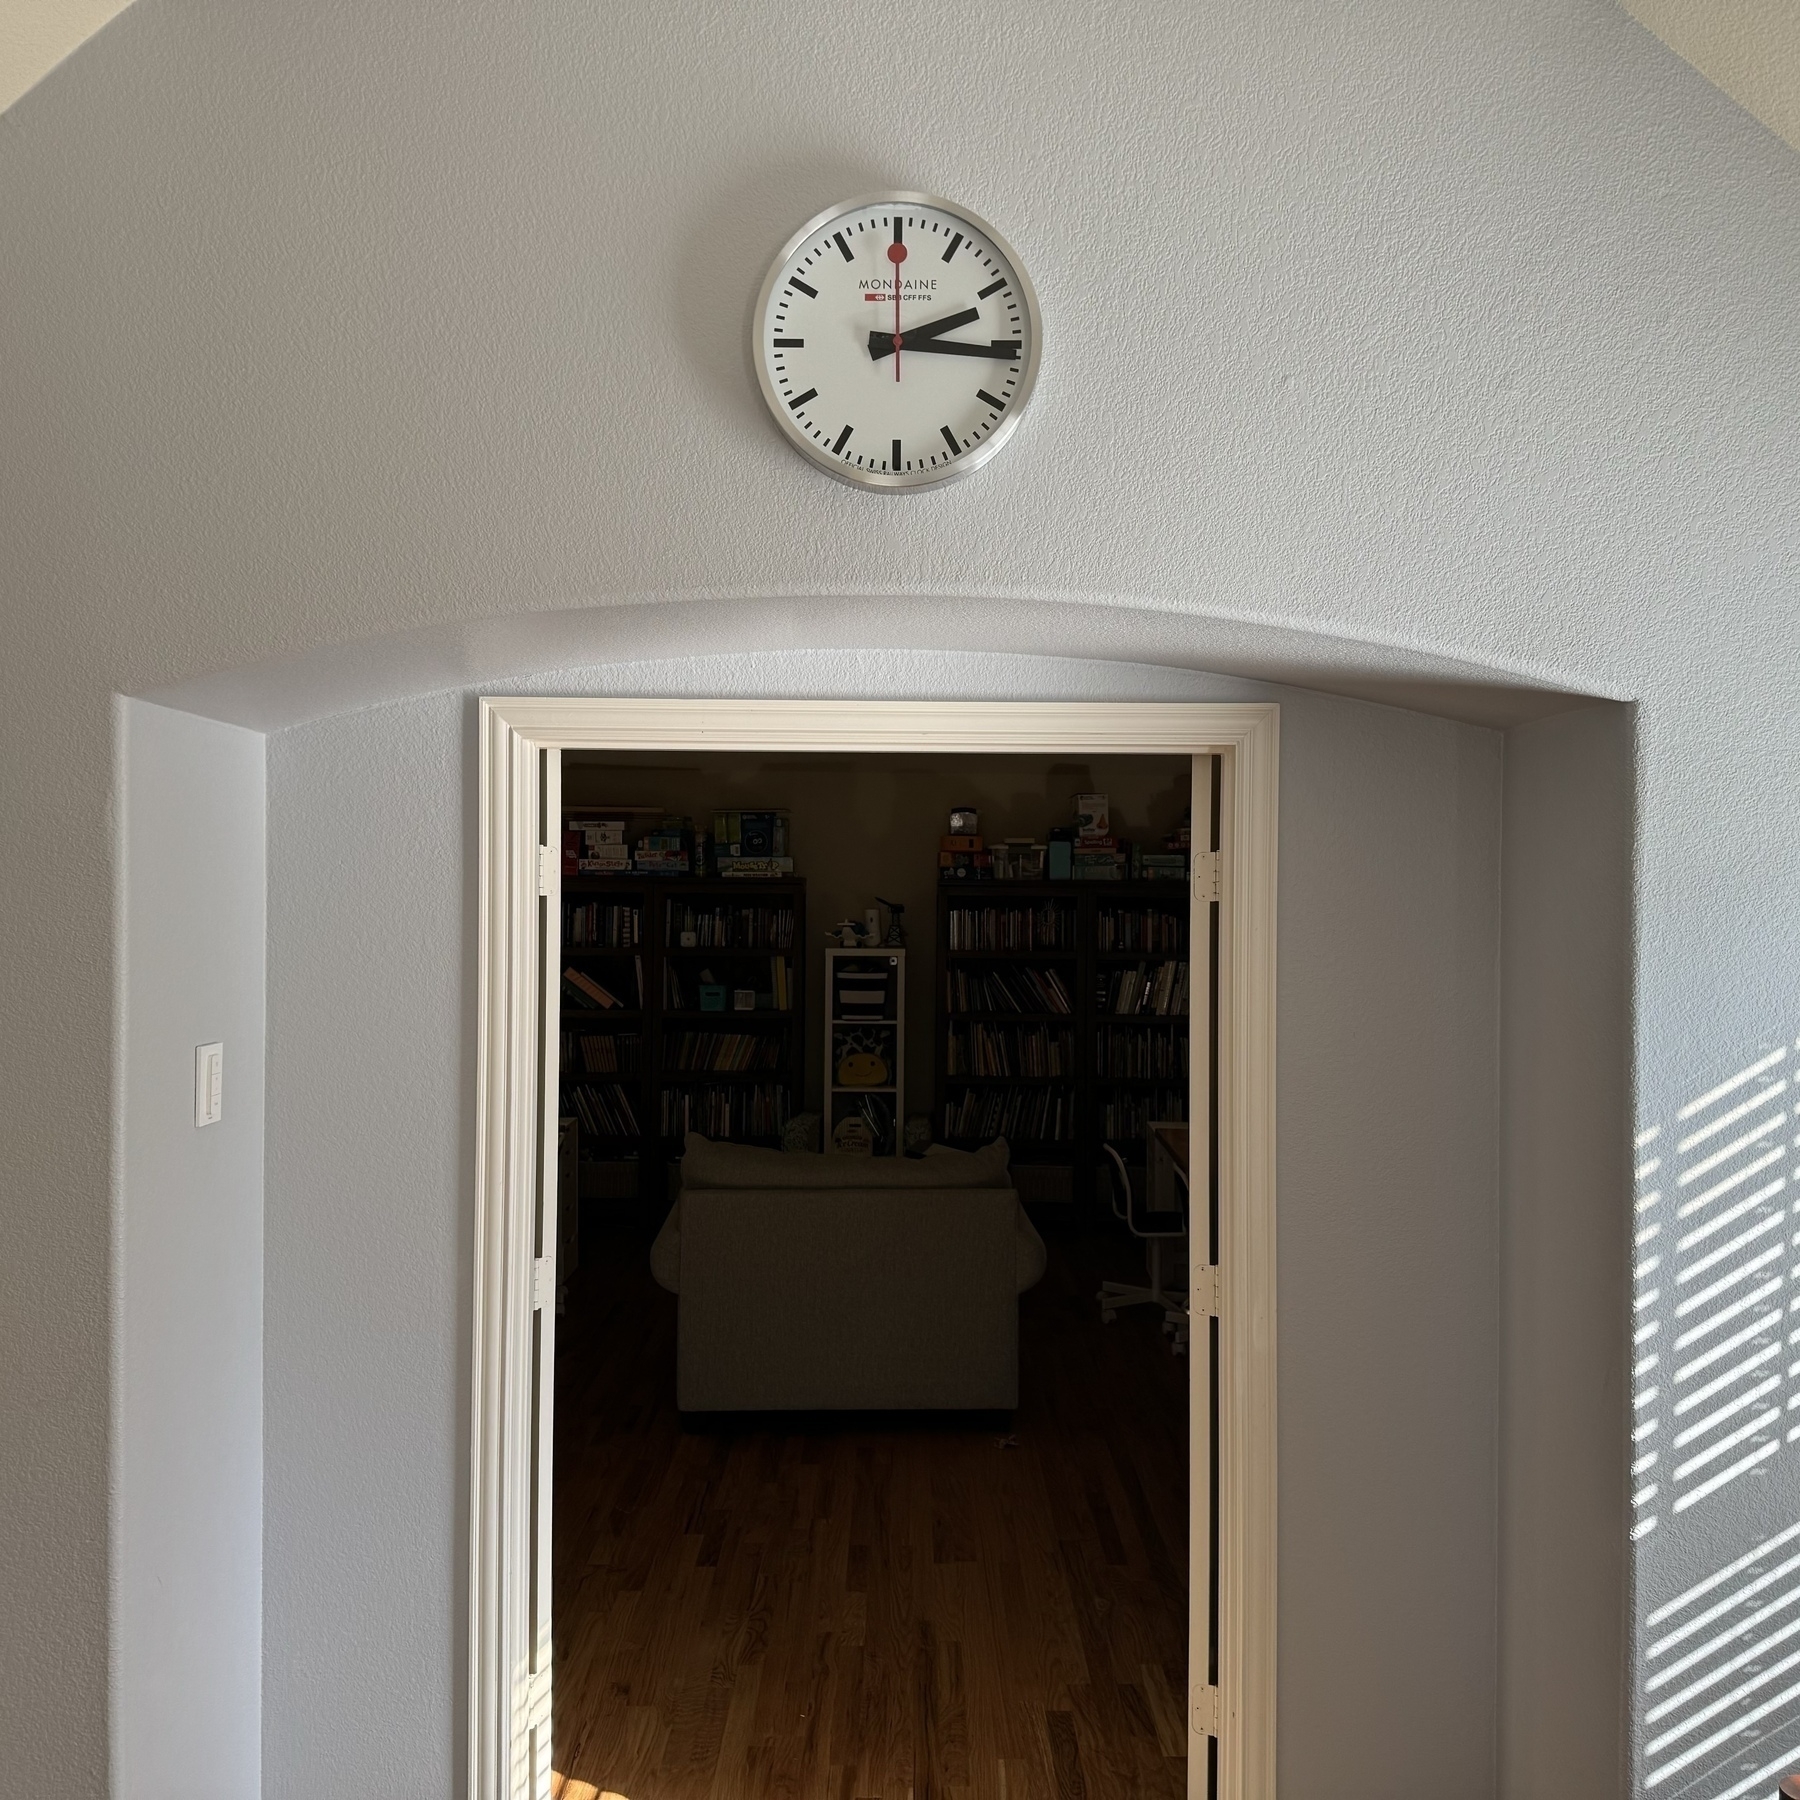 Swiss clock over library door